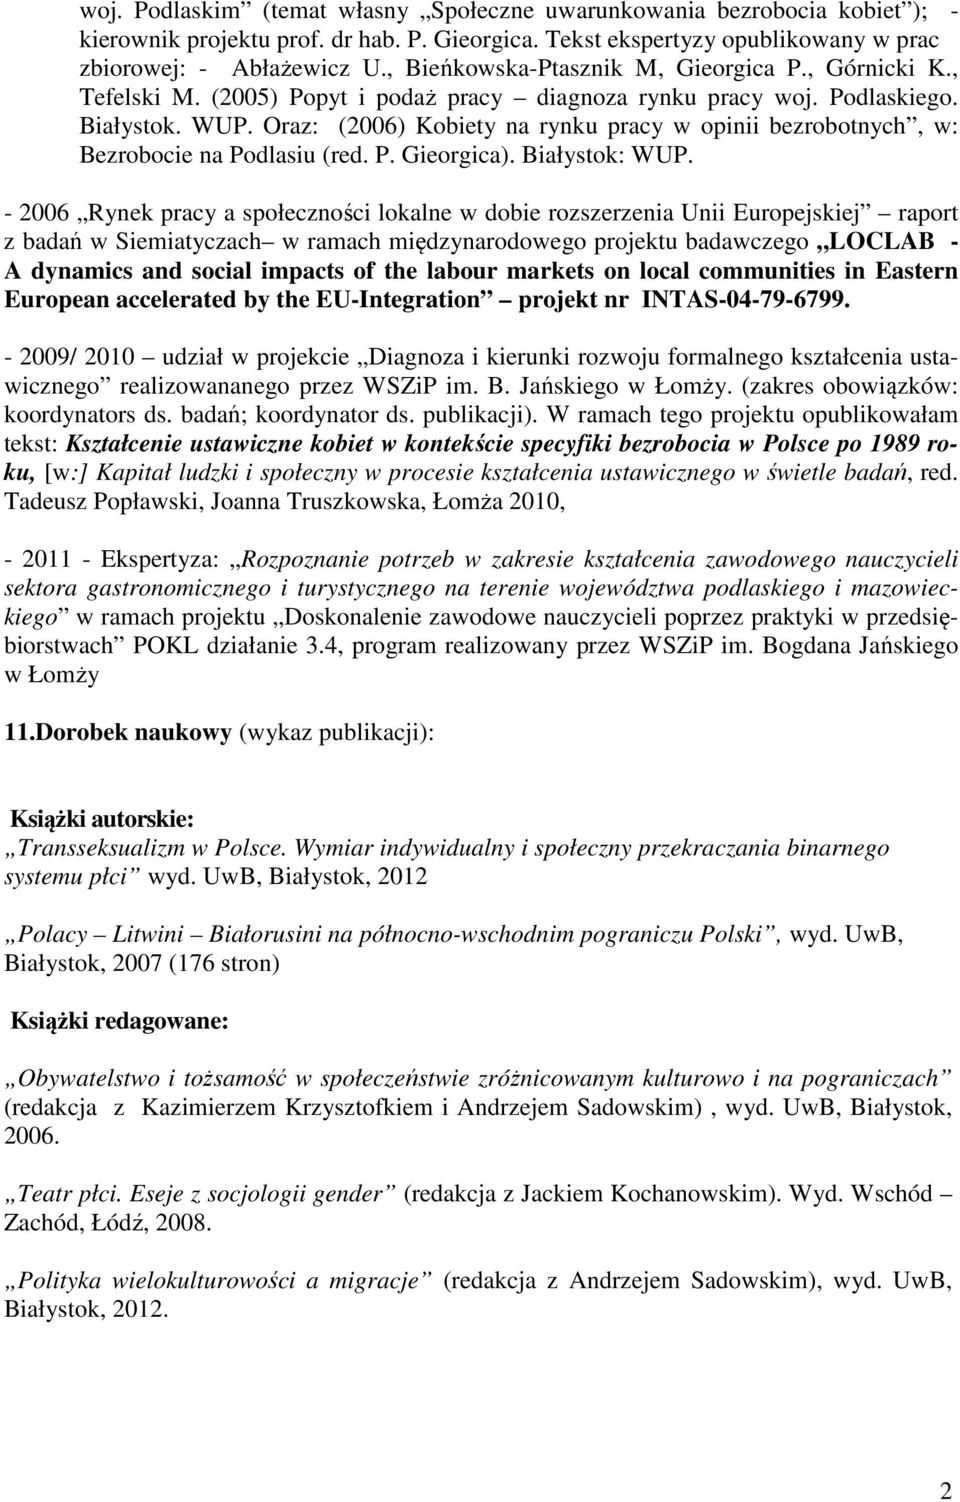 Oraz: (2006) Kobiety na rynku pracy w opinii bezrobotnych, w: Bezrobocie na Podlasiu (red. P. Gieorgica). Białystok: WUP.